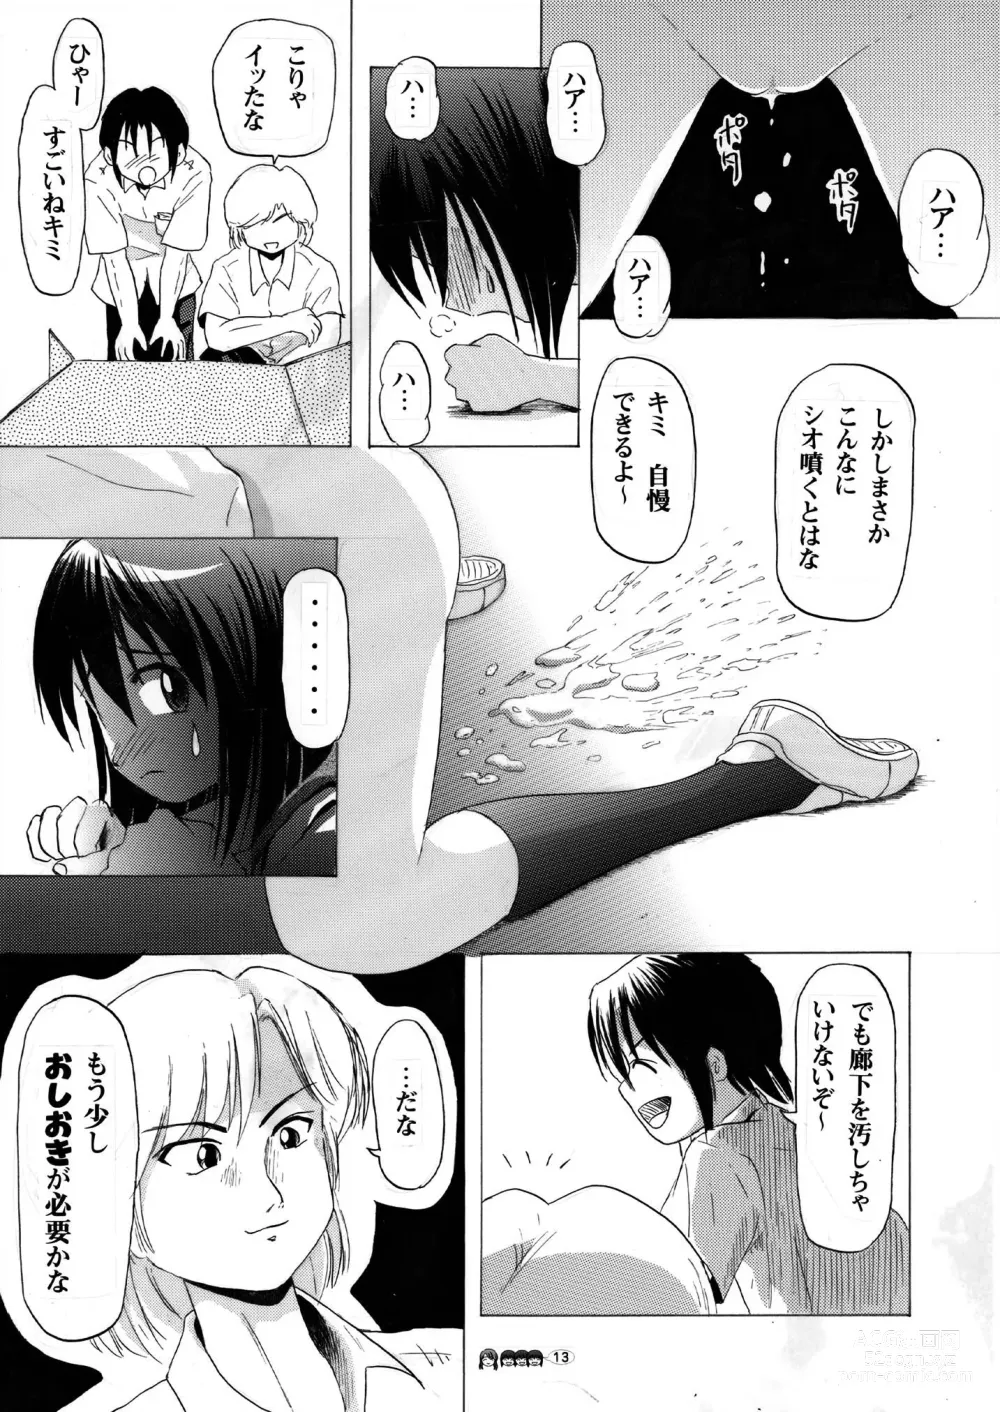 Page 13 of doujinshi Sachina no Koukou Nikki 3